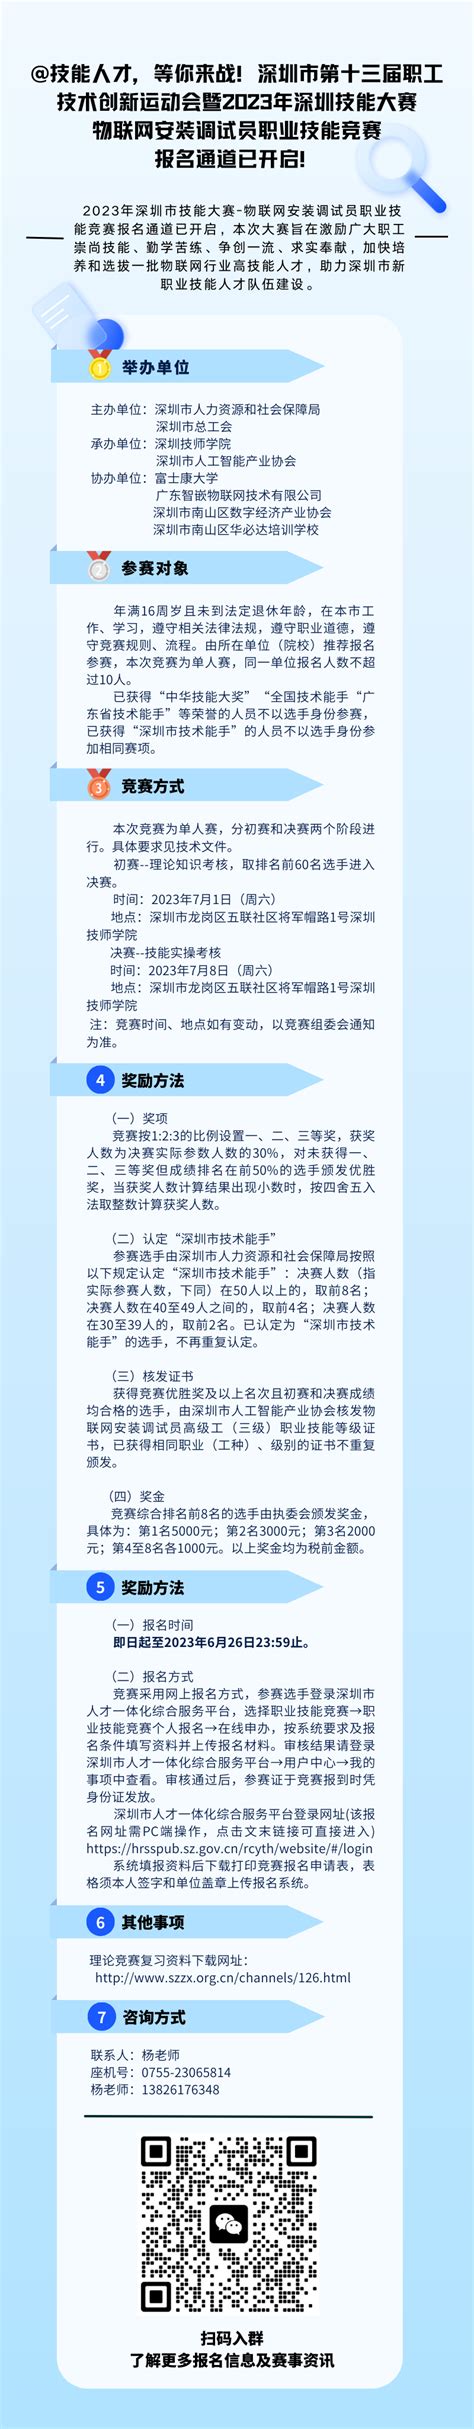 深圳市人才一体化综合服务平台照片要求 - 职业资格证件照尺寸 - 报名电子照助手